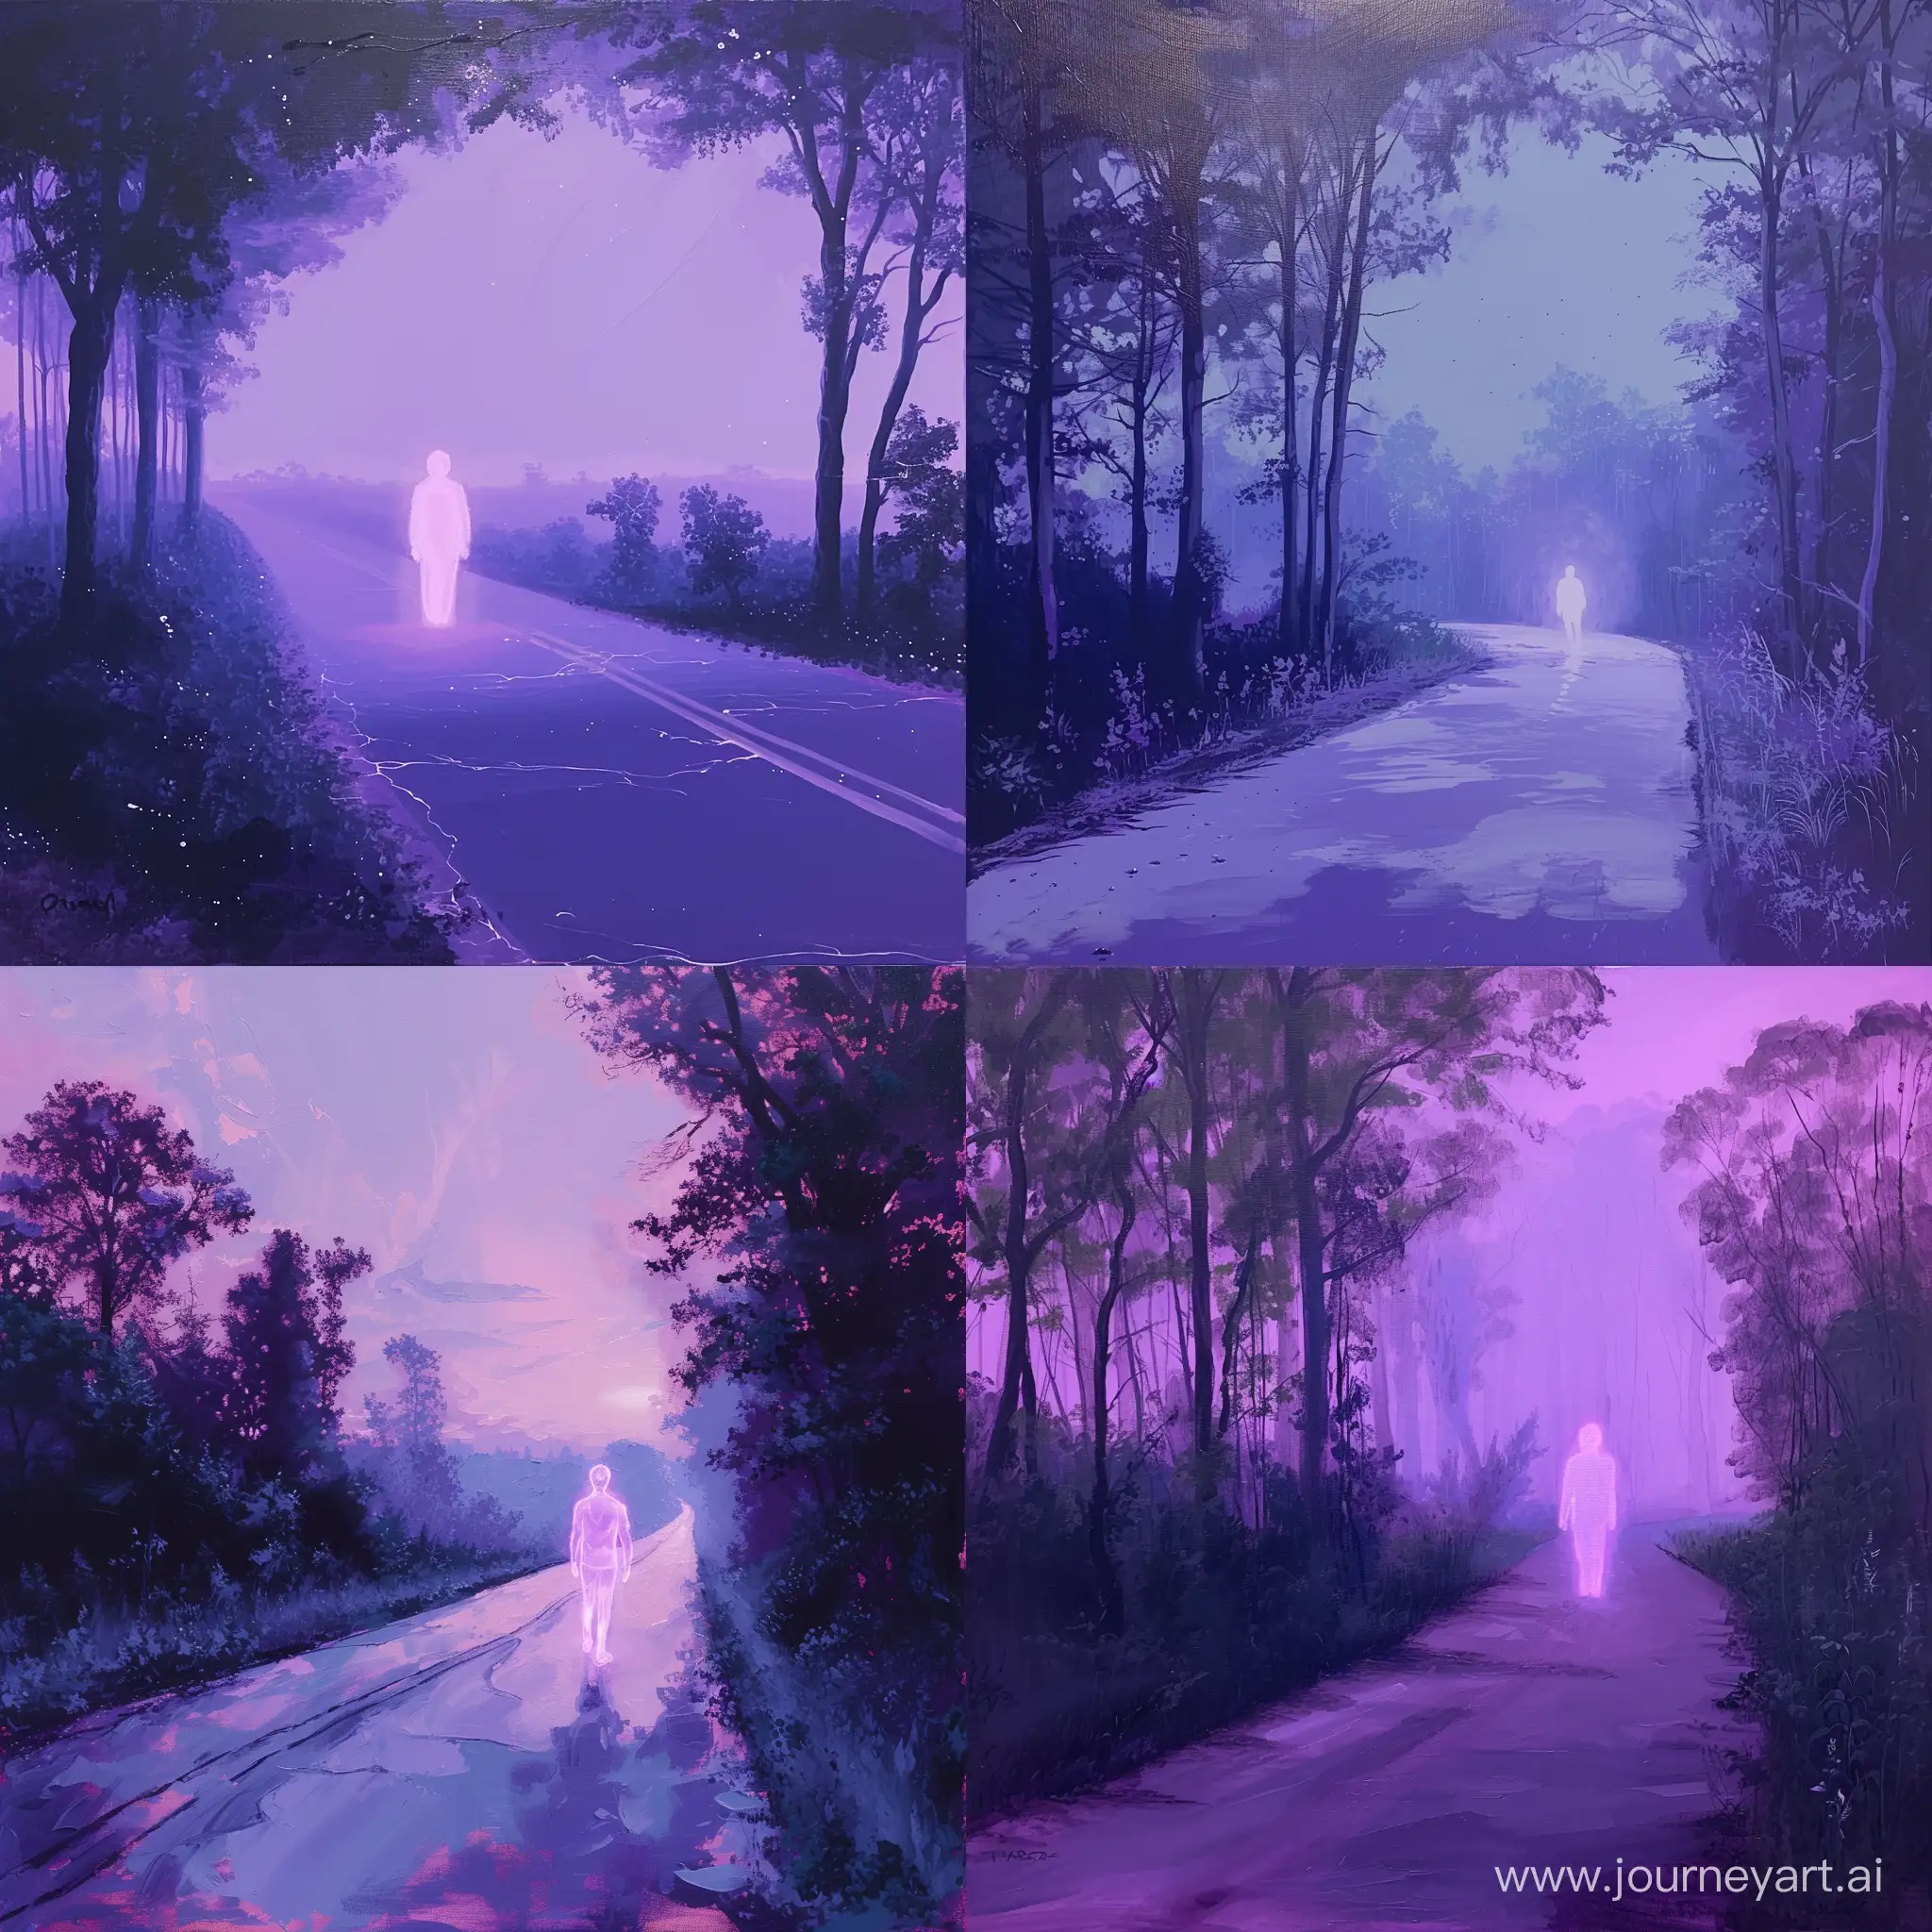 картина акрилом, реалистичный, чёткий, фиолетовые цвета, человек светится, дорога, по краям картины деревья, атмосфера, 